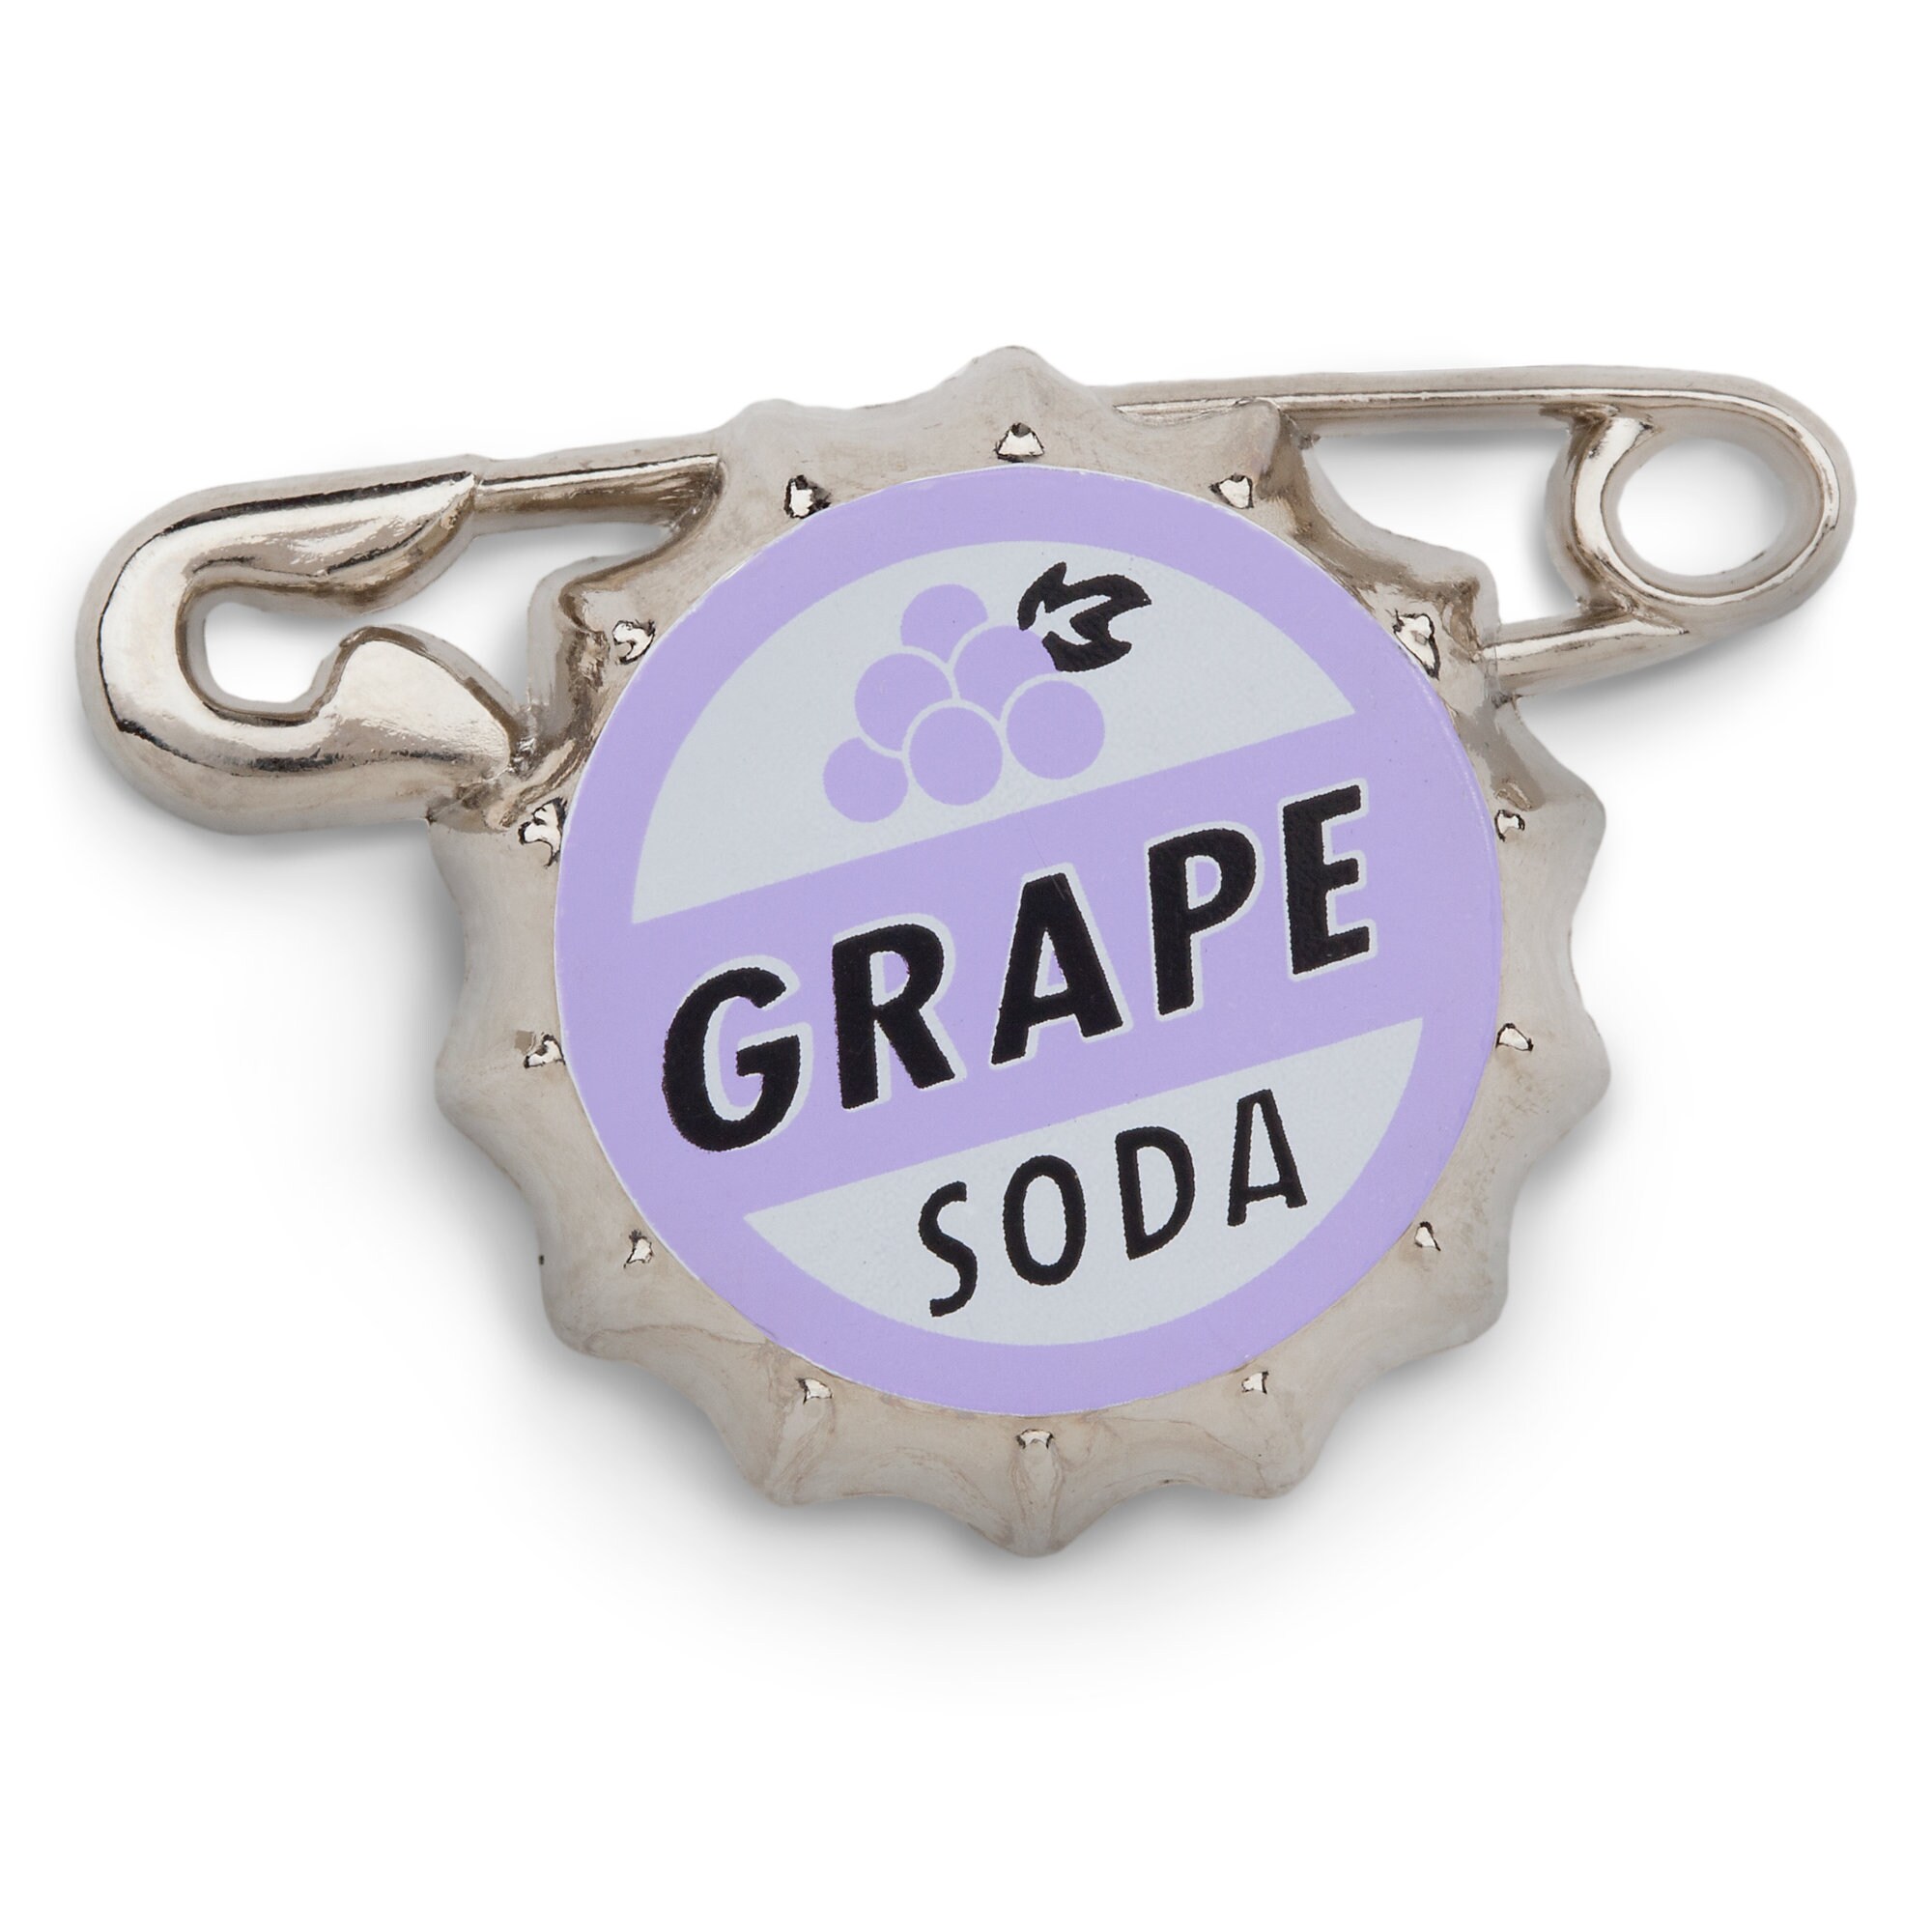 Russell's Grape Soda Bottlecap Pin - Up